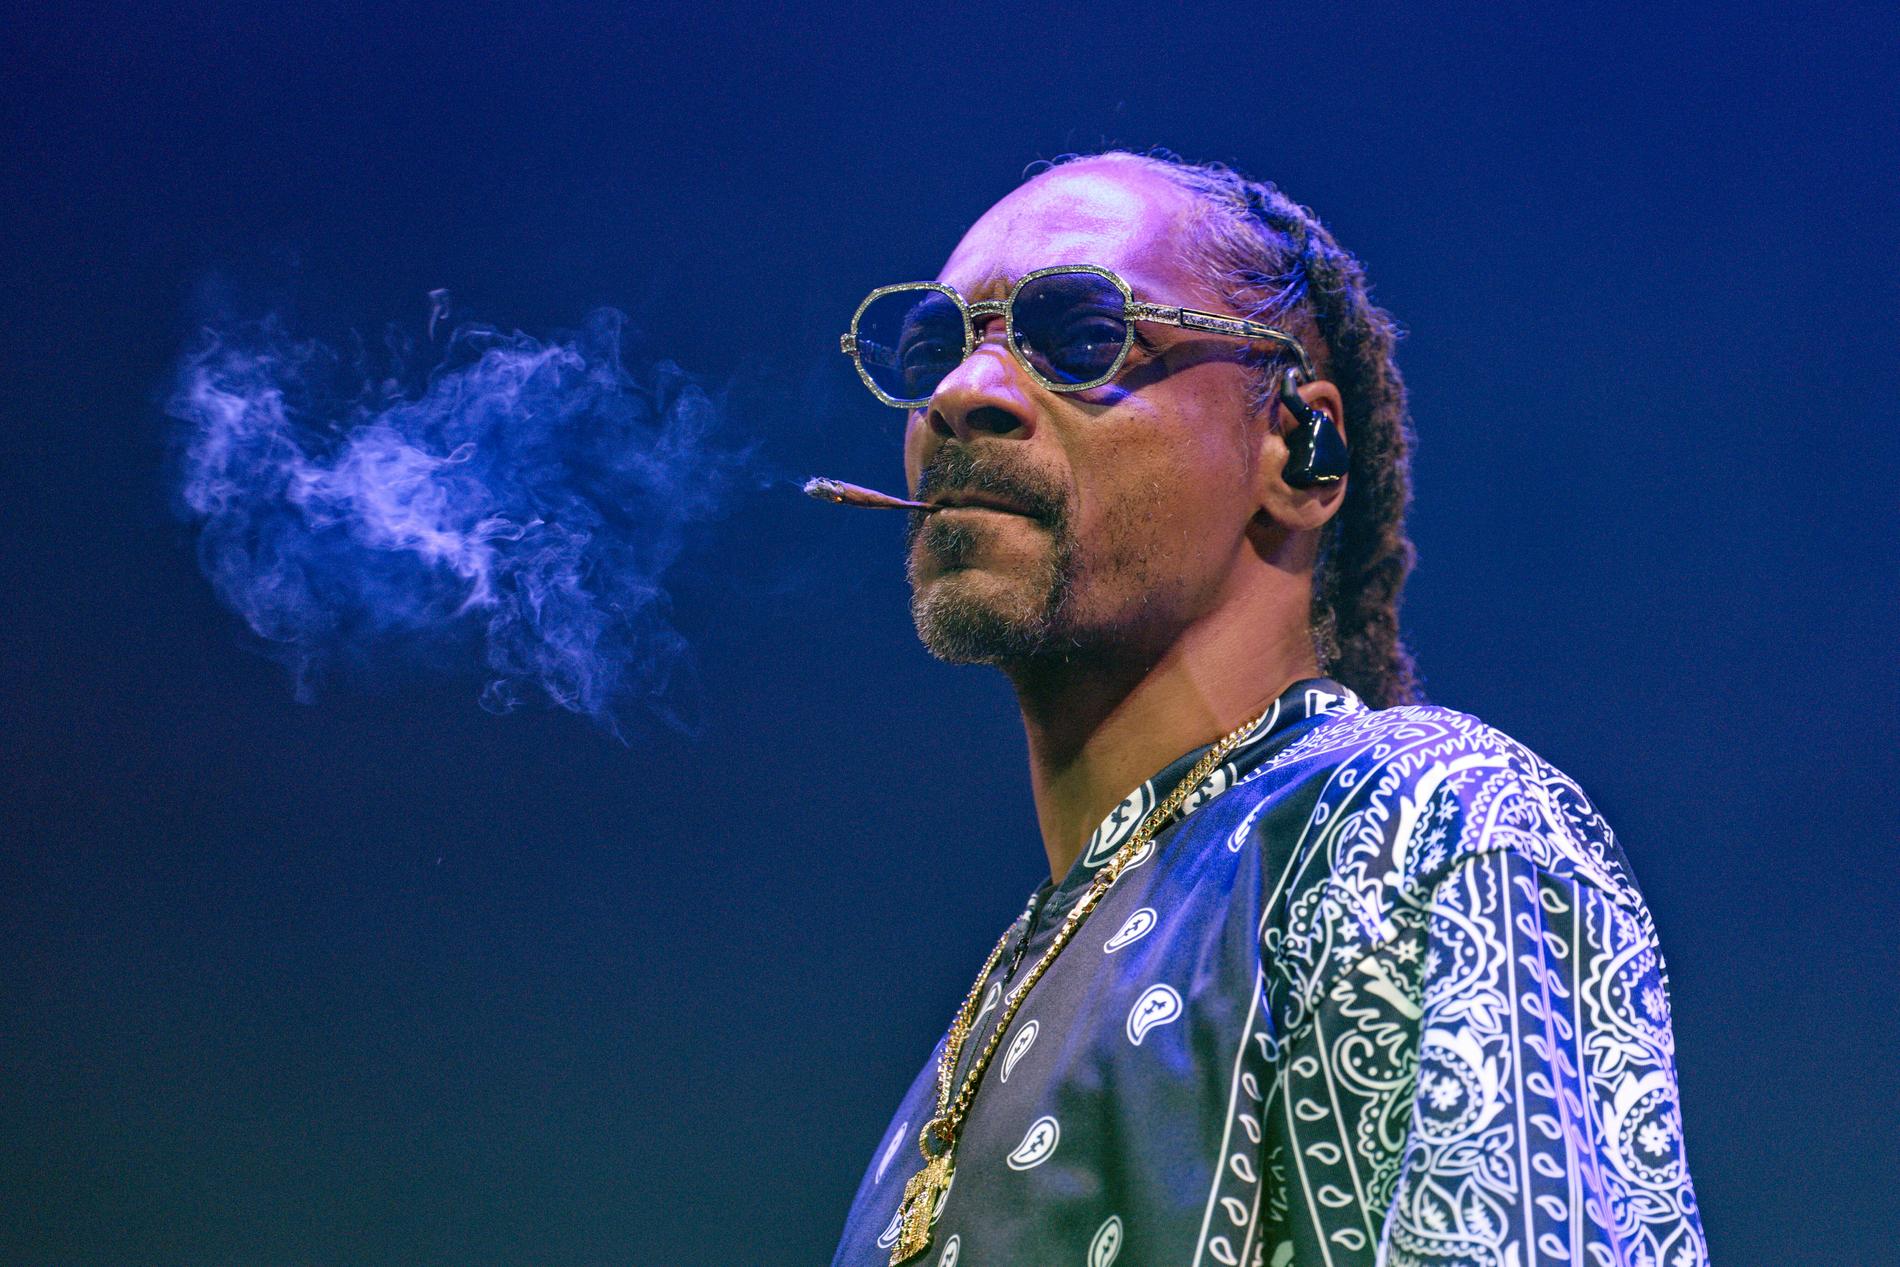 Lägger Snoop Dogg jointen på hyllan? Arkivbild.